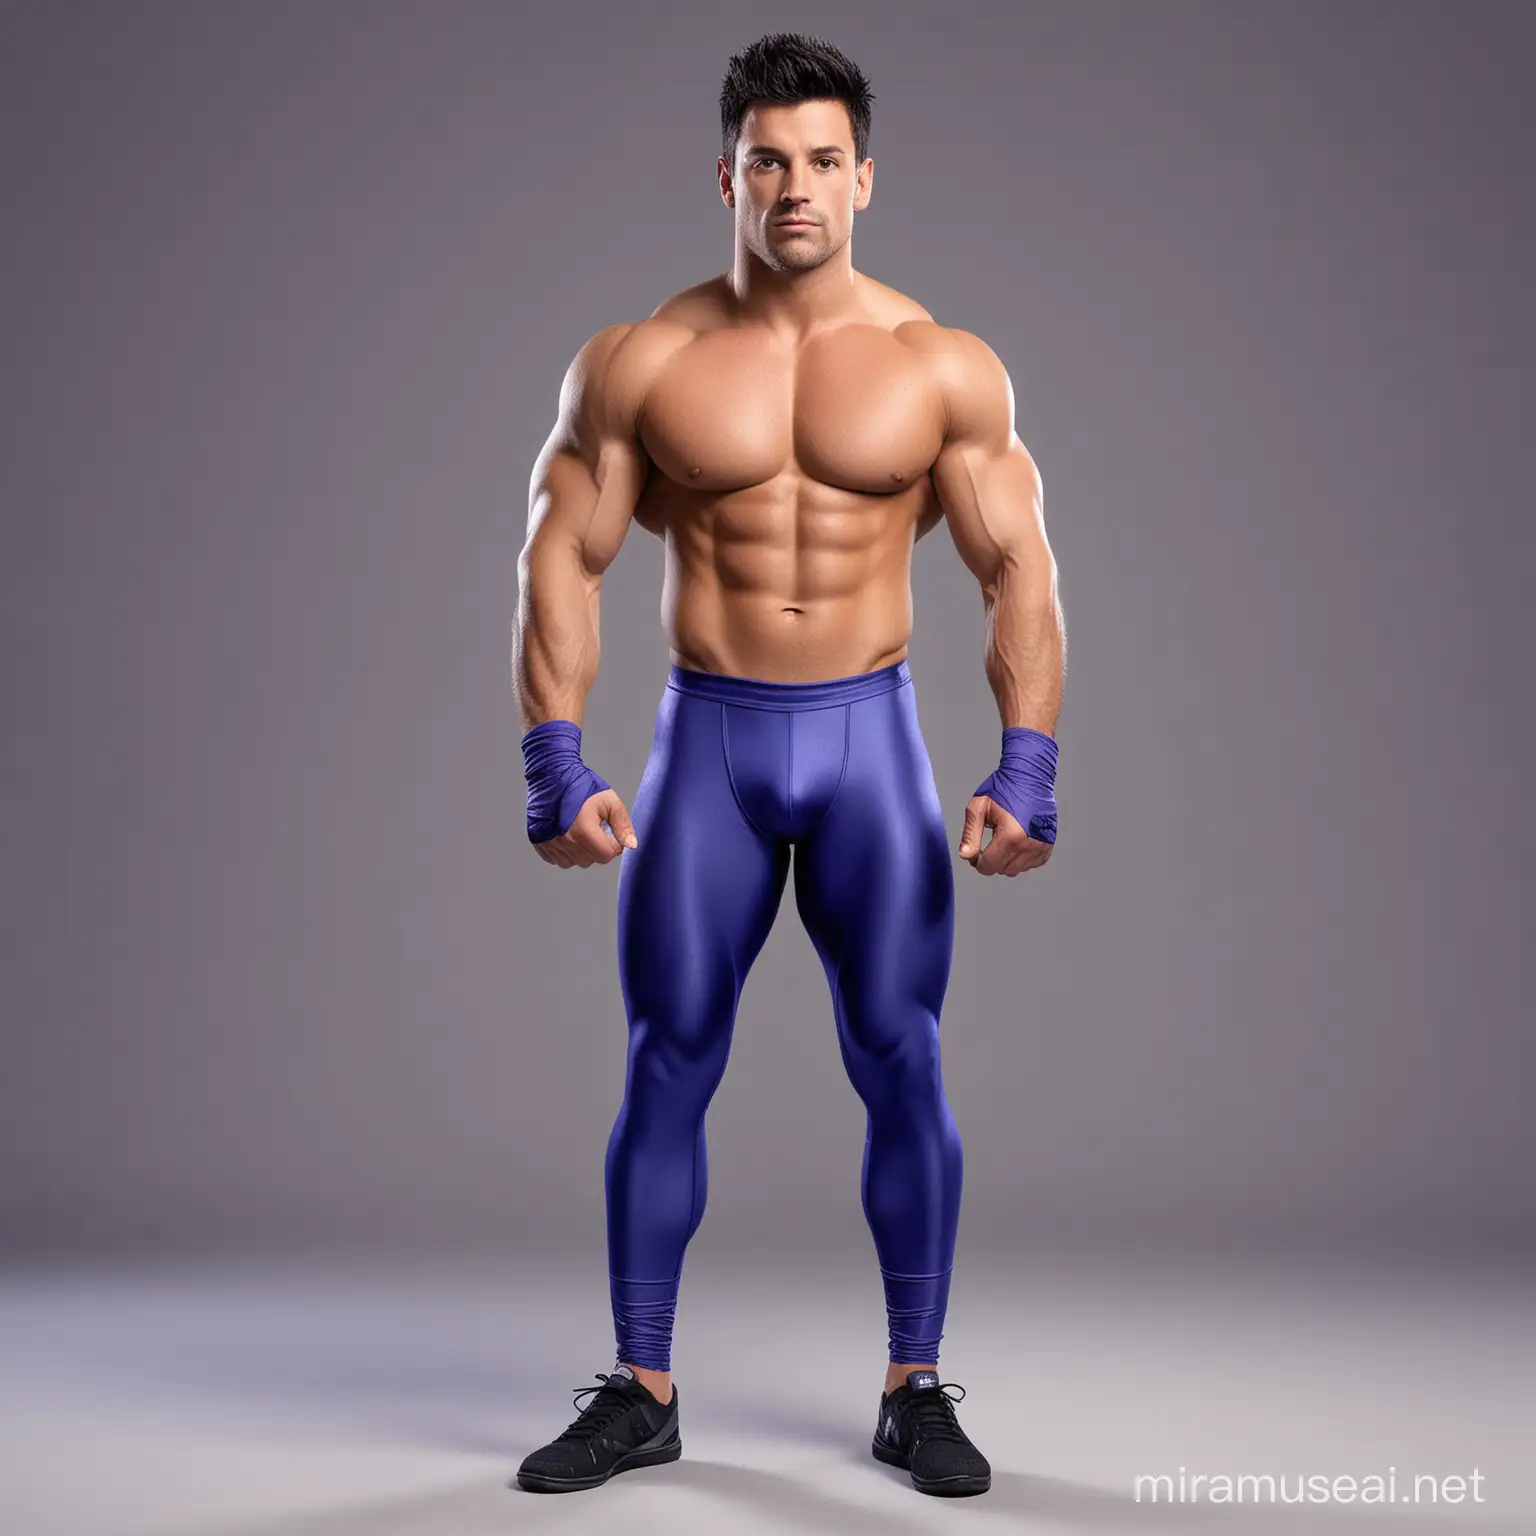 Cartoon Network Style Wrestler Charming Argentine Fighter in Cobalt Blue Spandex